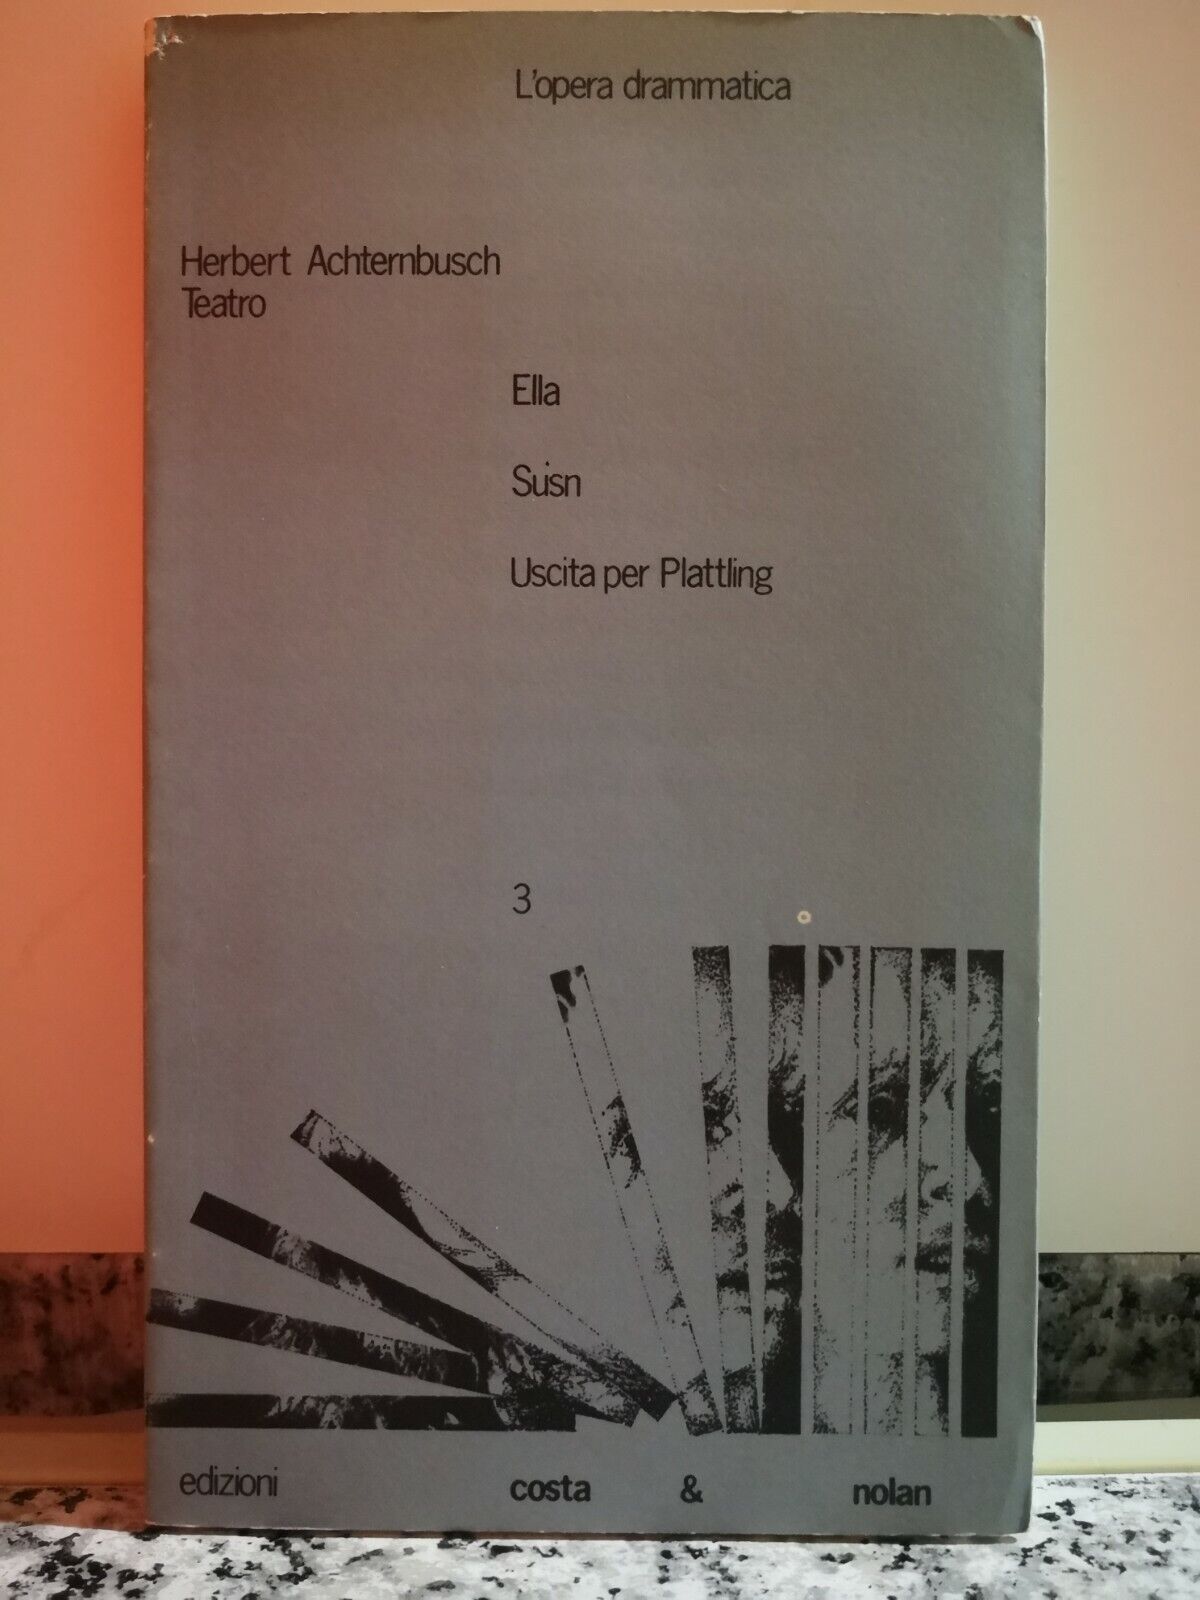 Teatro..Ella - Susn - Uscita per Plattling  di Herbert Achternbusch,  1983-F